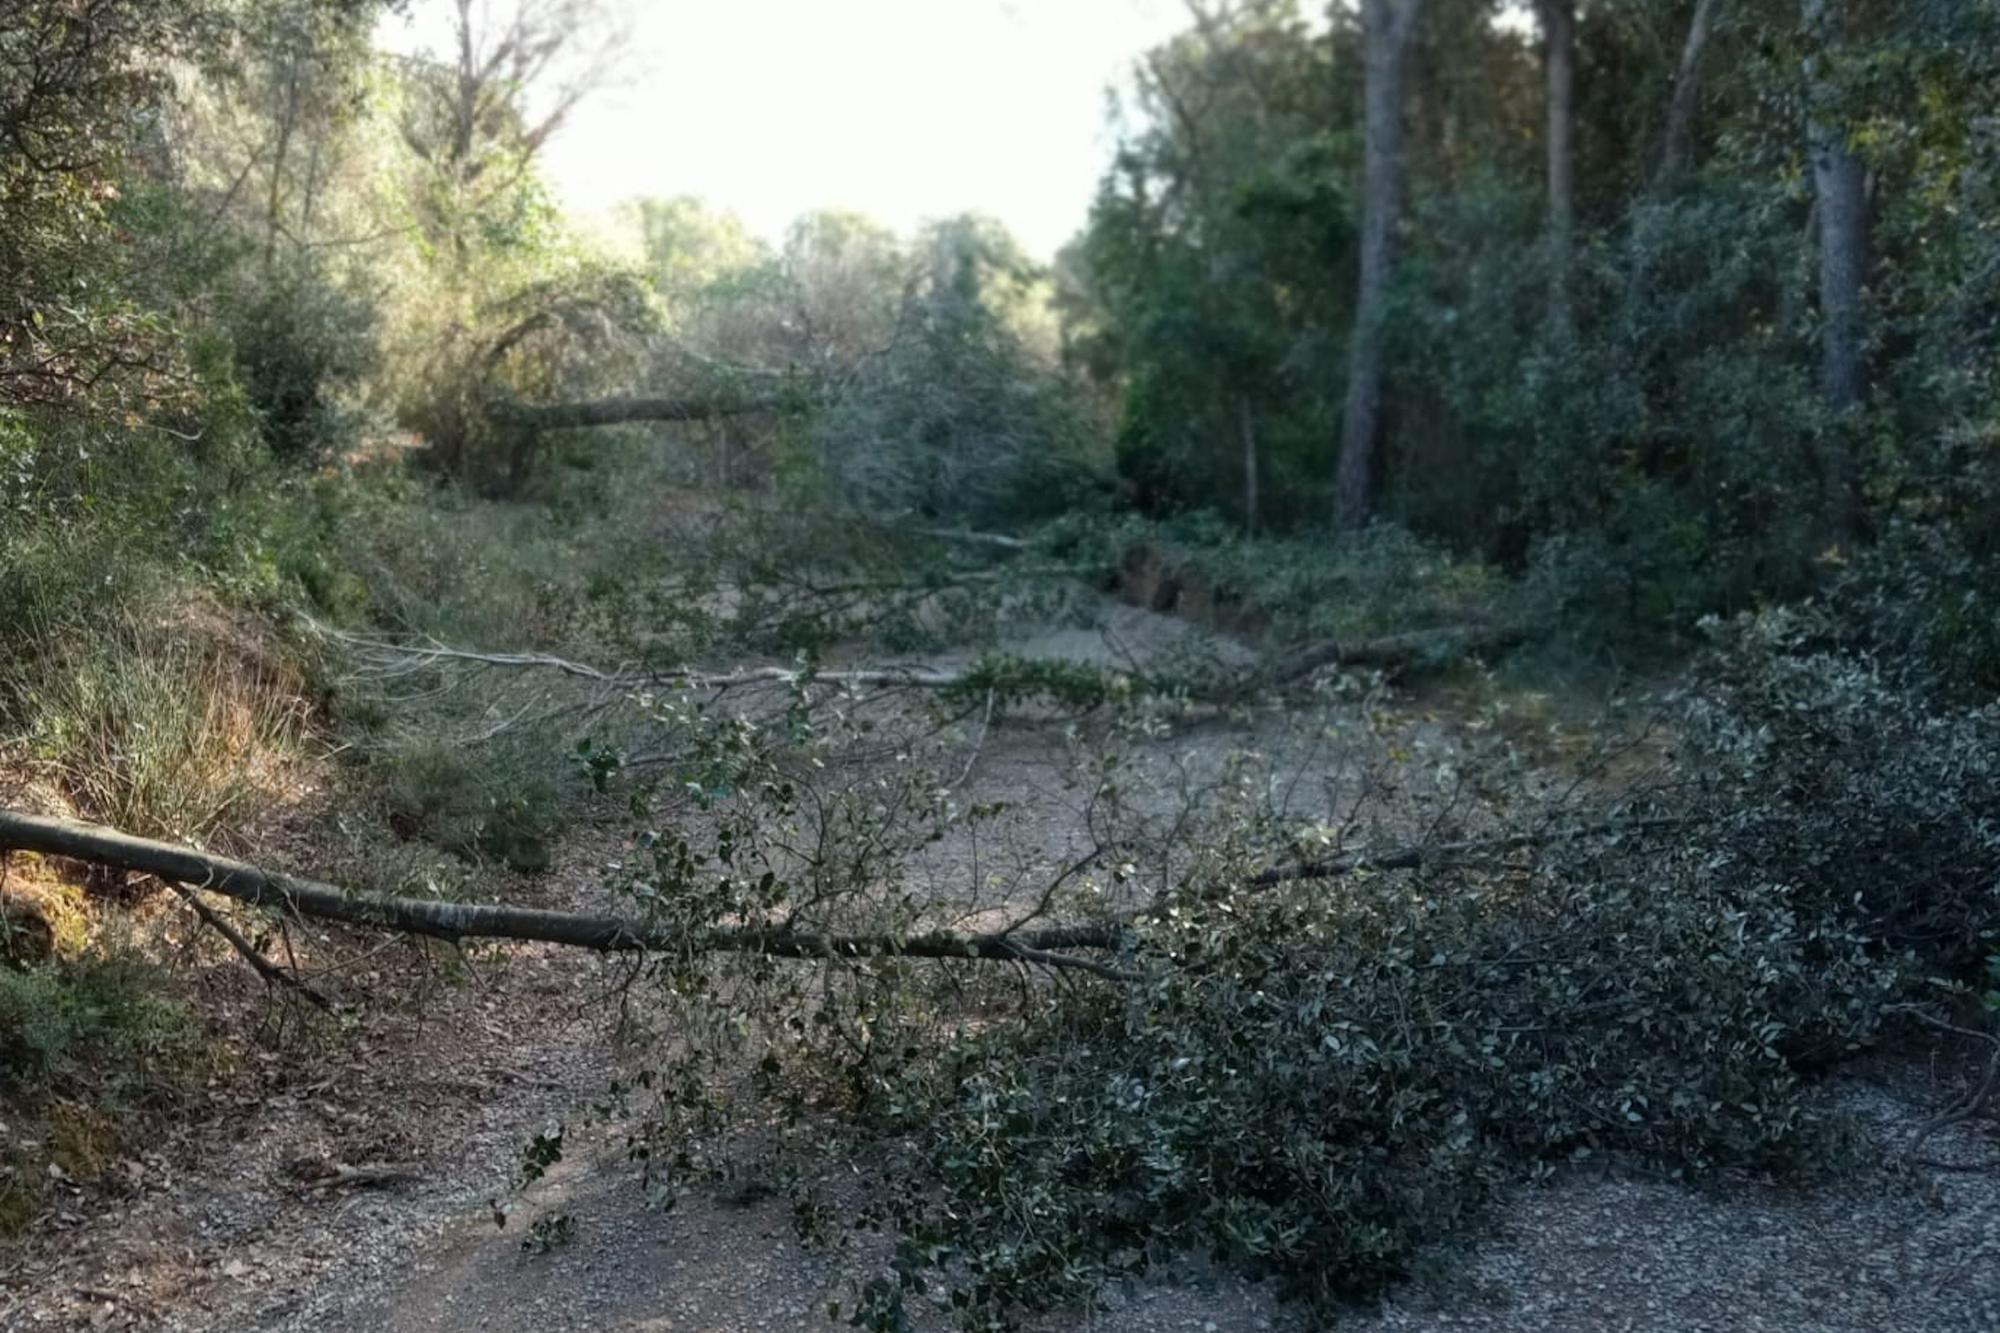 Els actes vandàlics a Vilademuls continuen amb la tala de divuit arbres més